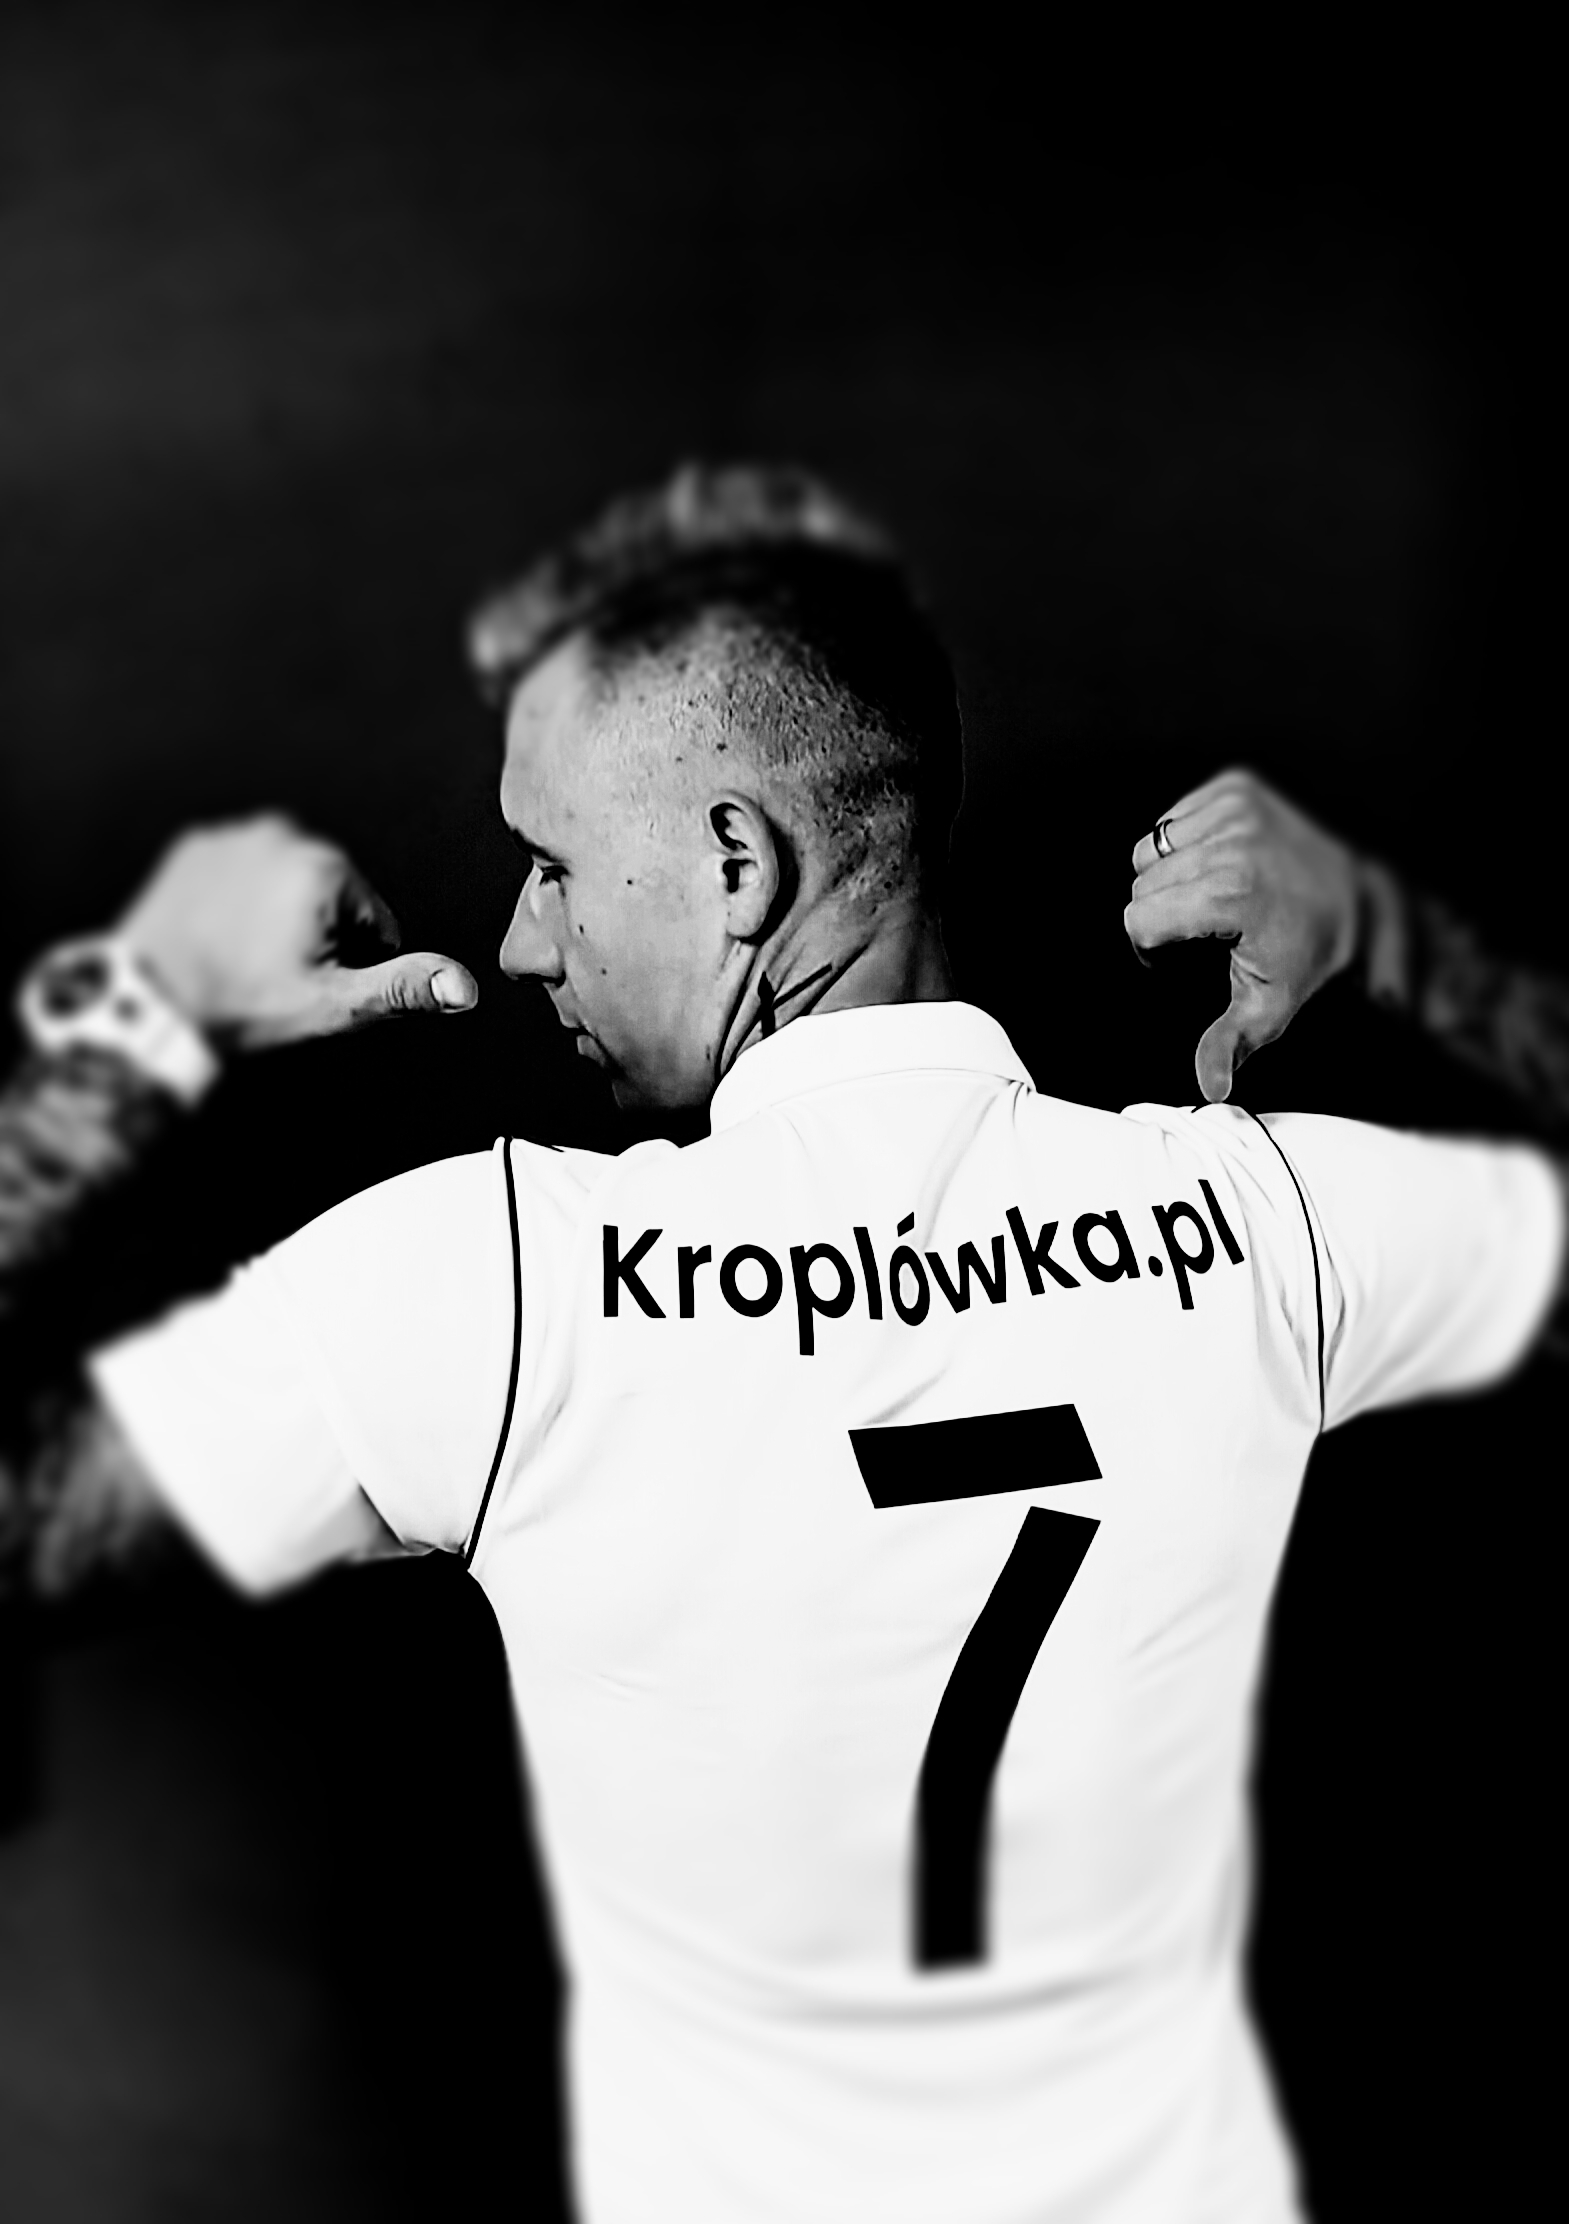 Wywiad z kapitanem zespołu Kroplówka.pl, Krystianem Kąsowski